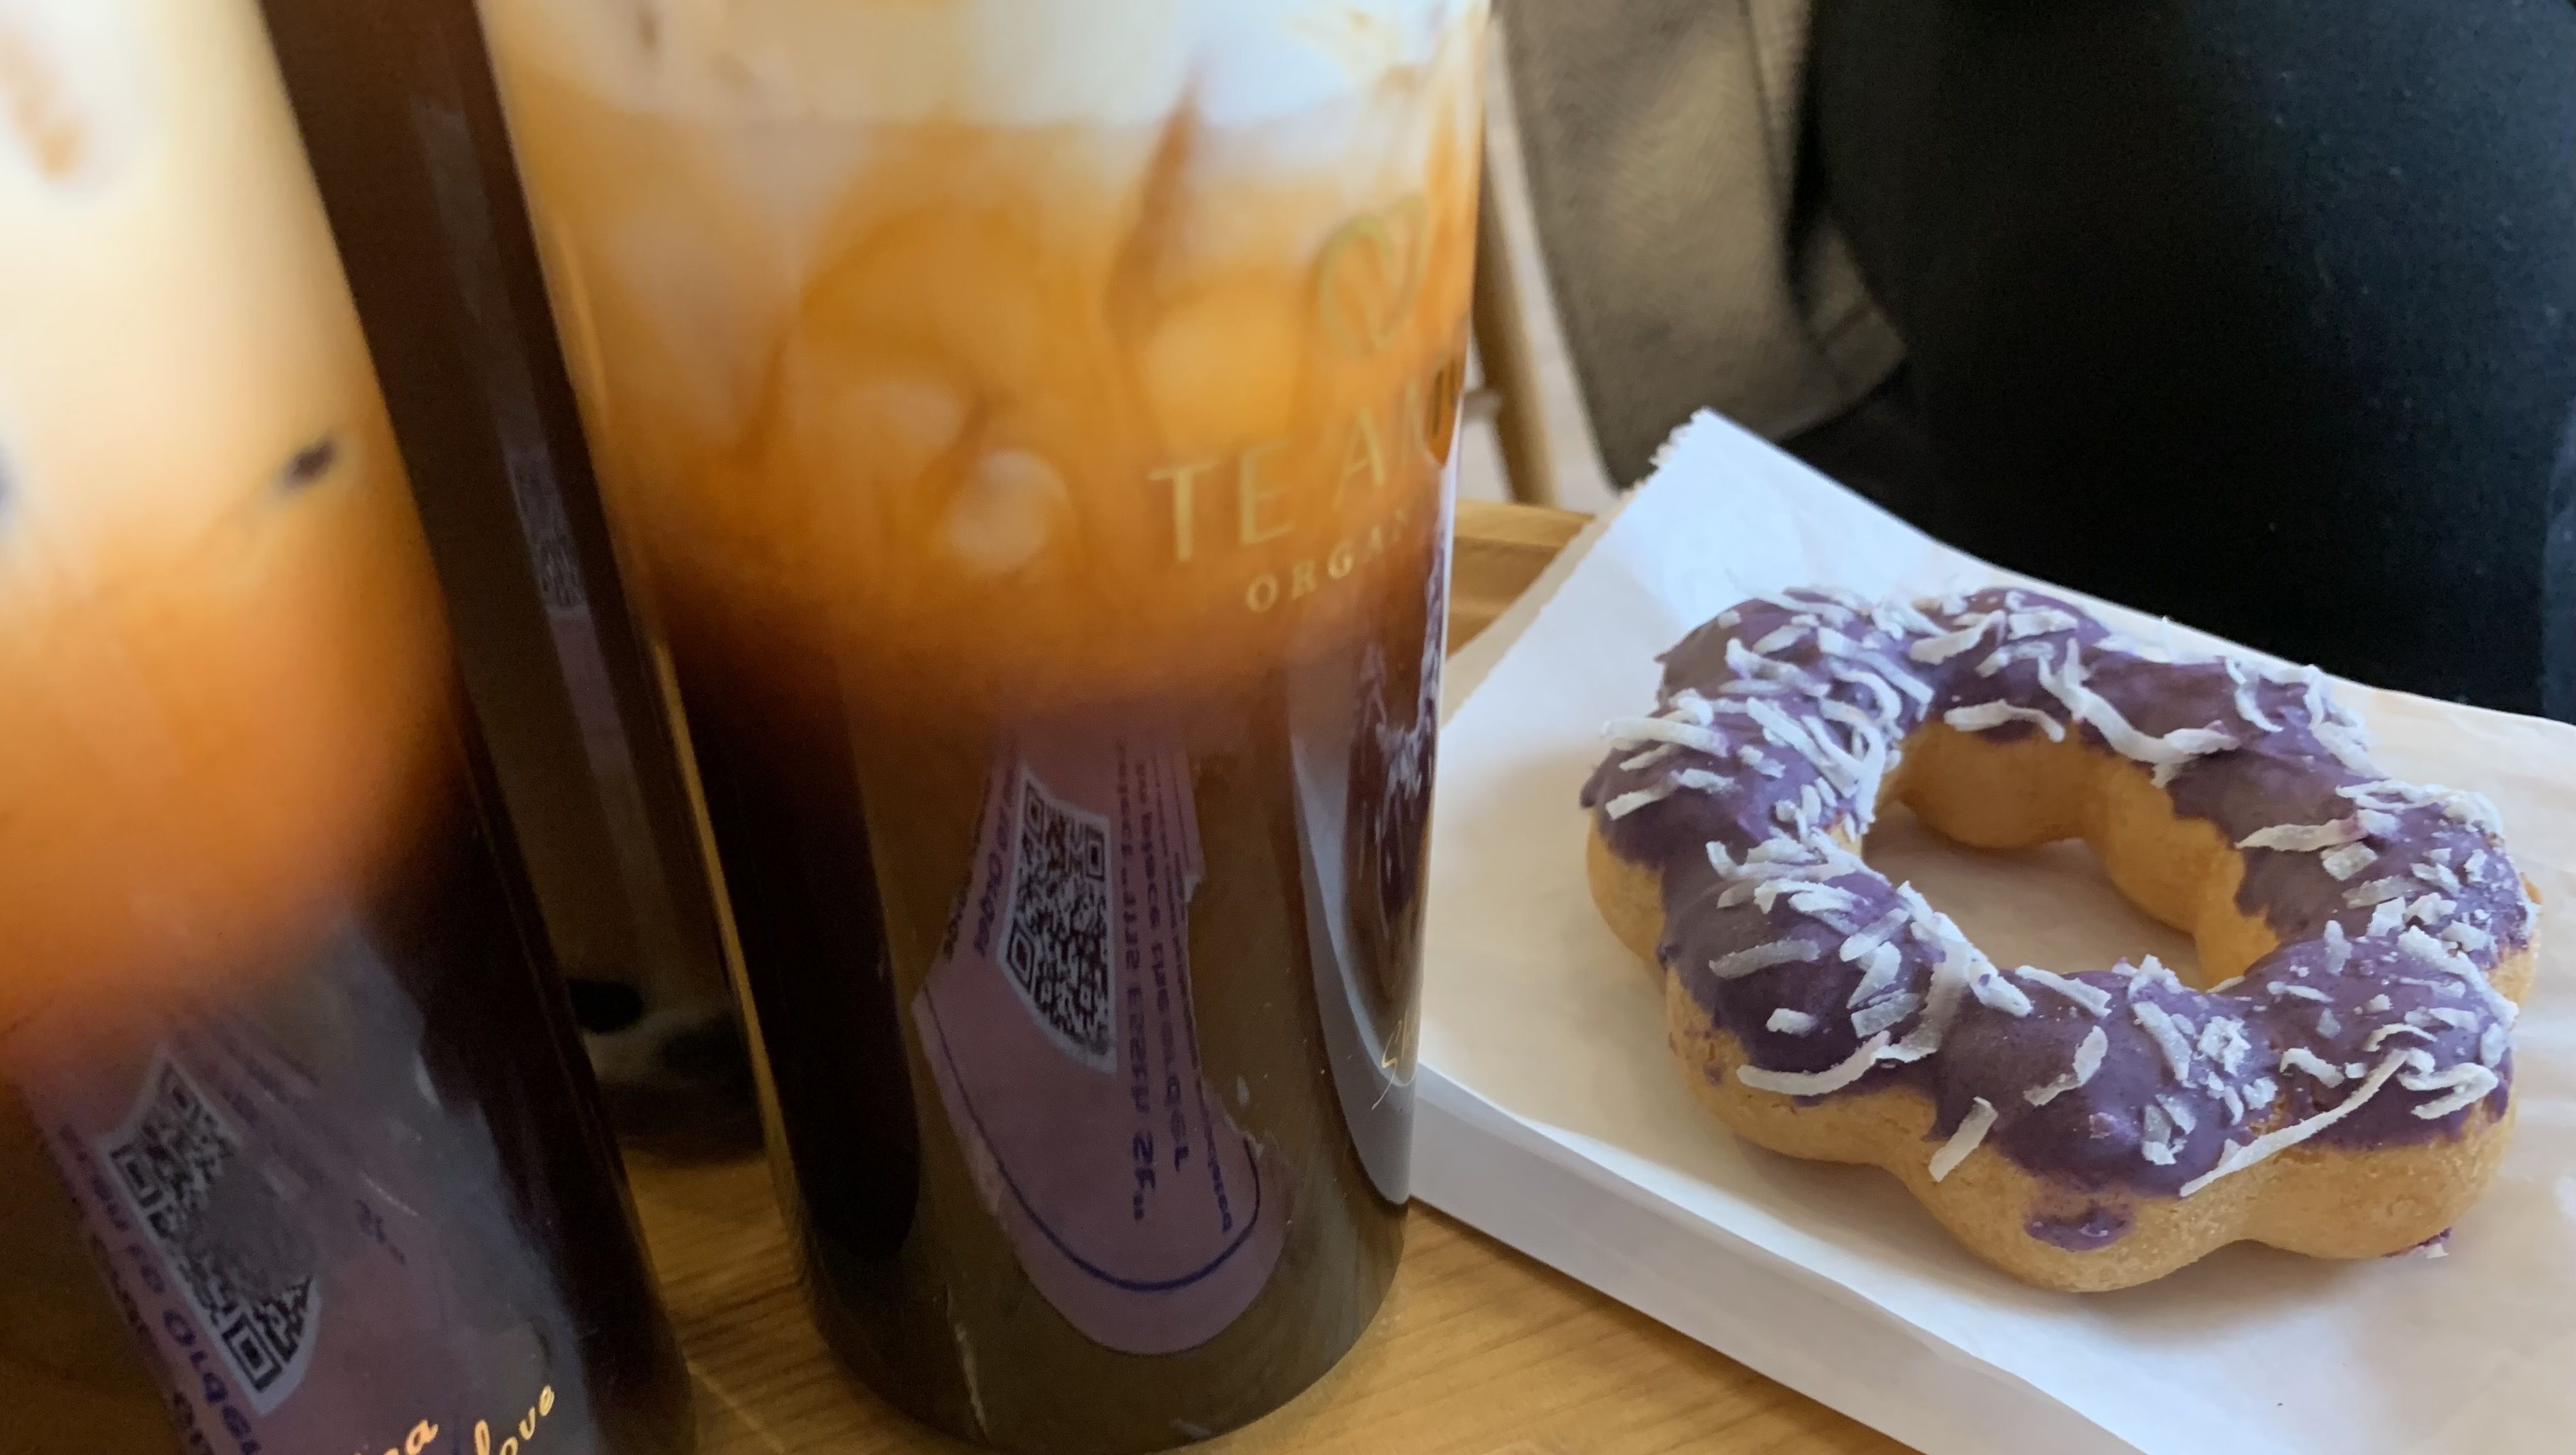 Photo of iced teas and a donut on a table. 